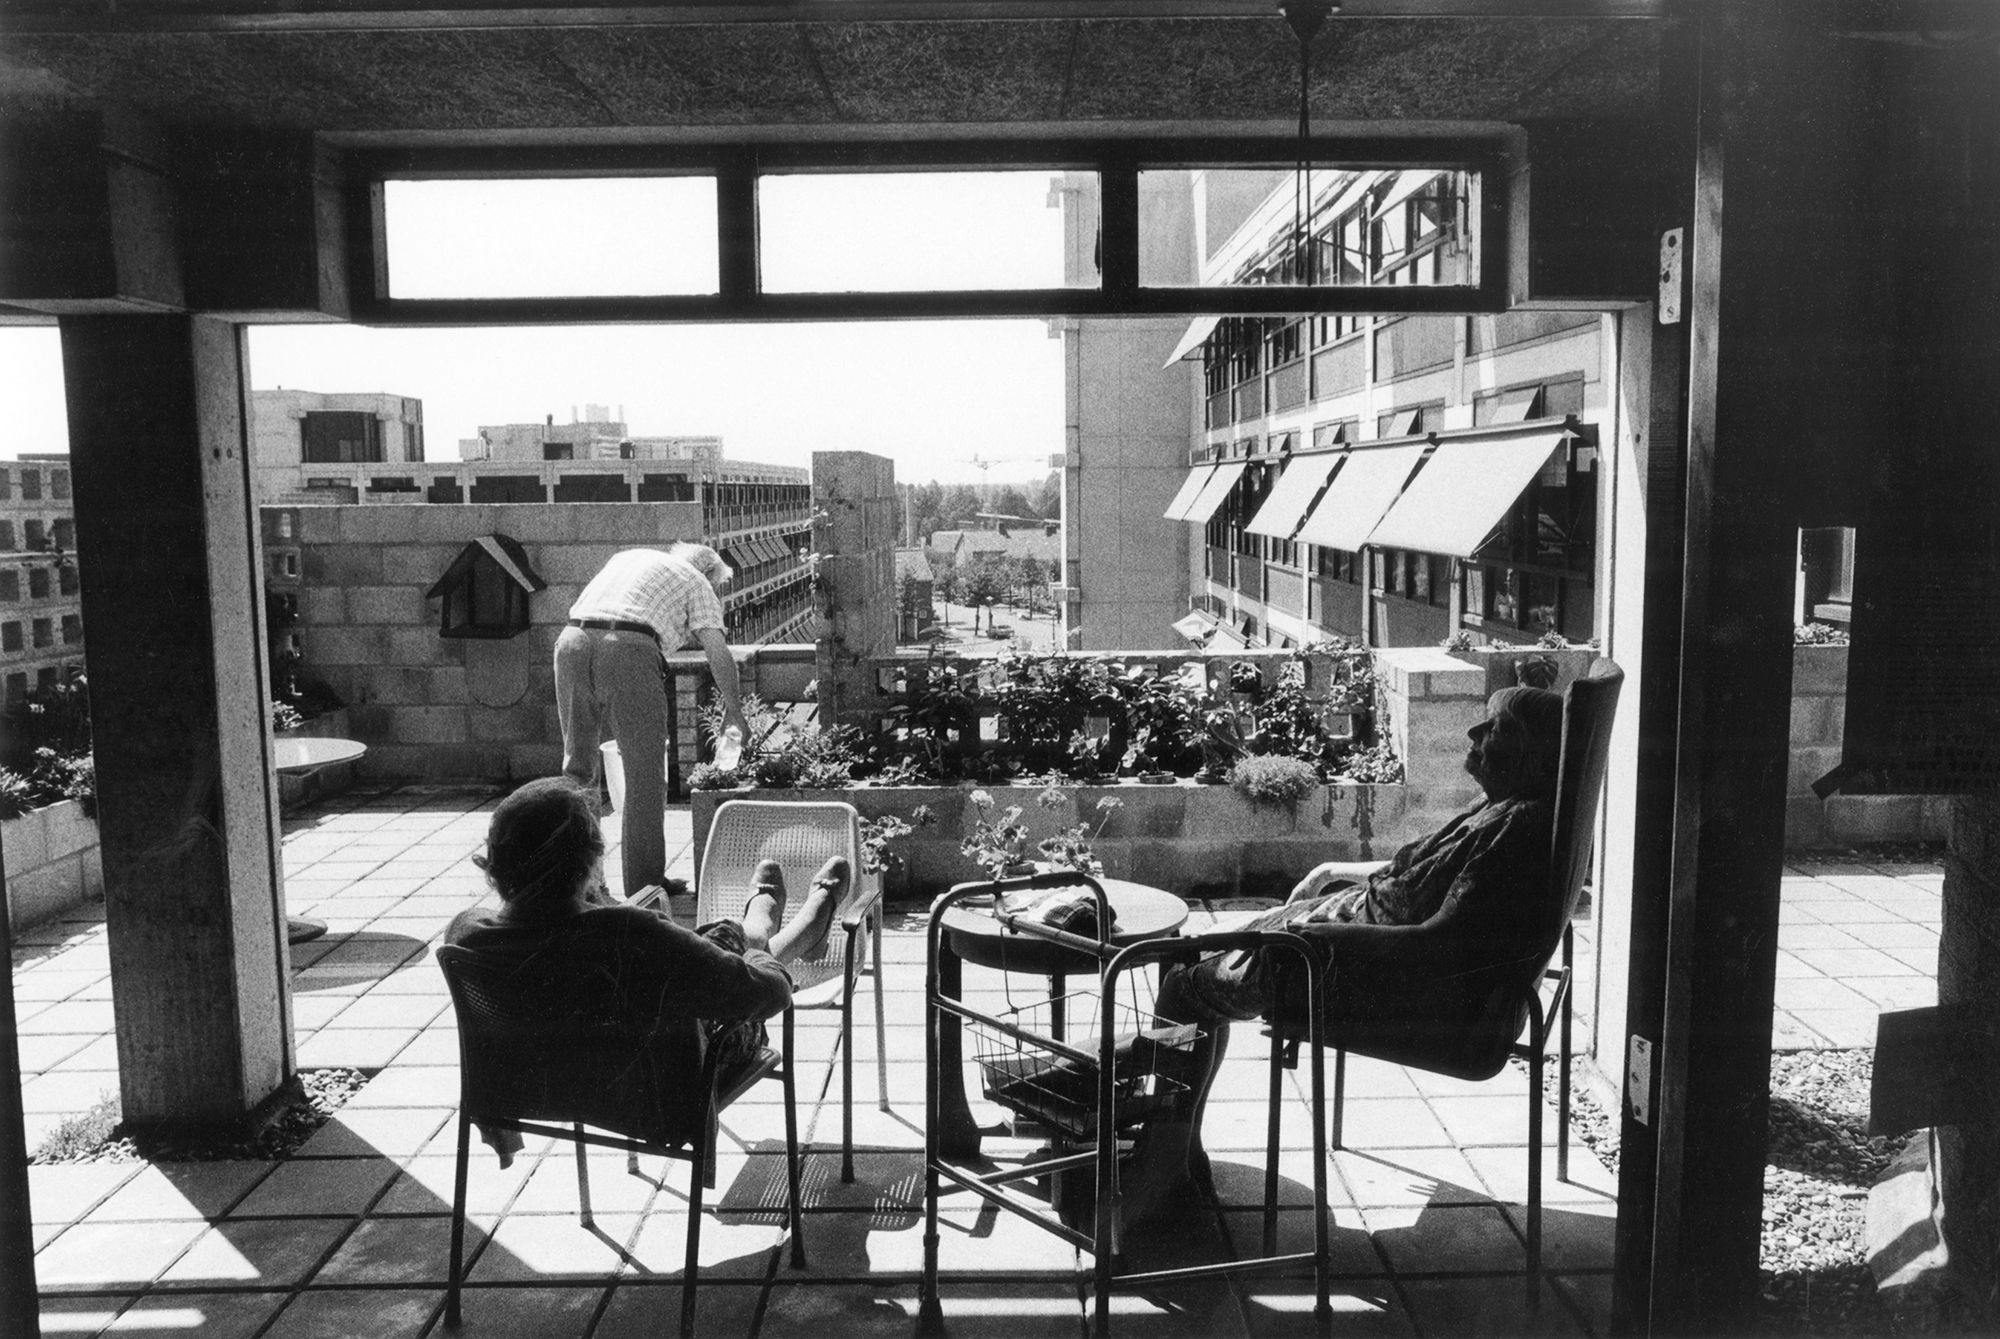 Herman Hertzberger. Gebouwencomplex voor bejaarden ‘De Drie Hoven', Amsterdam, 1964-74. Foto: Willem Diepraam 